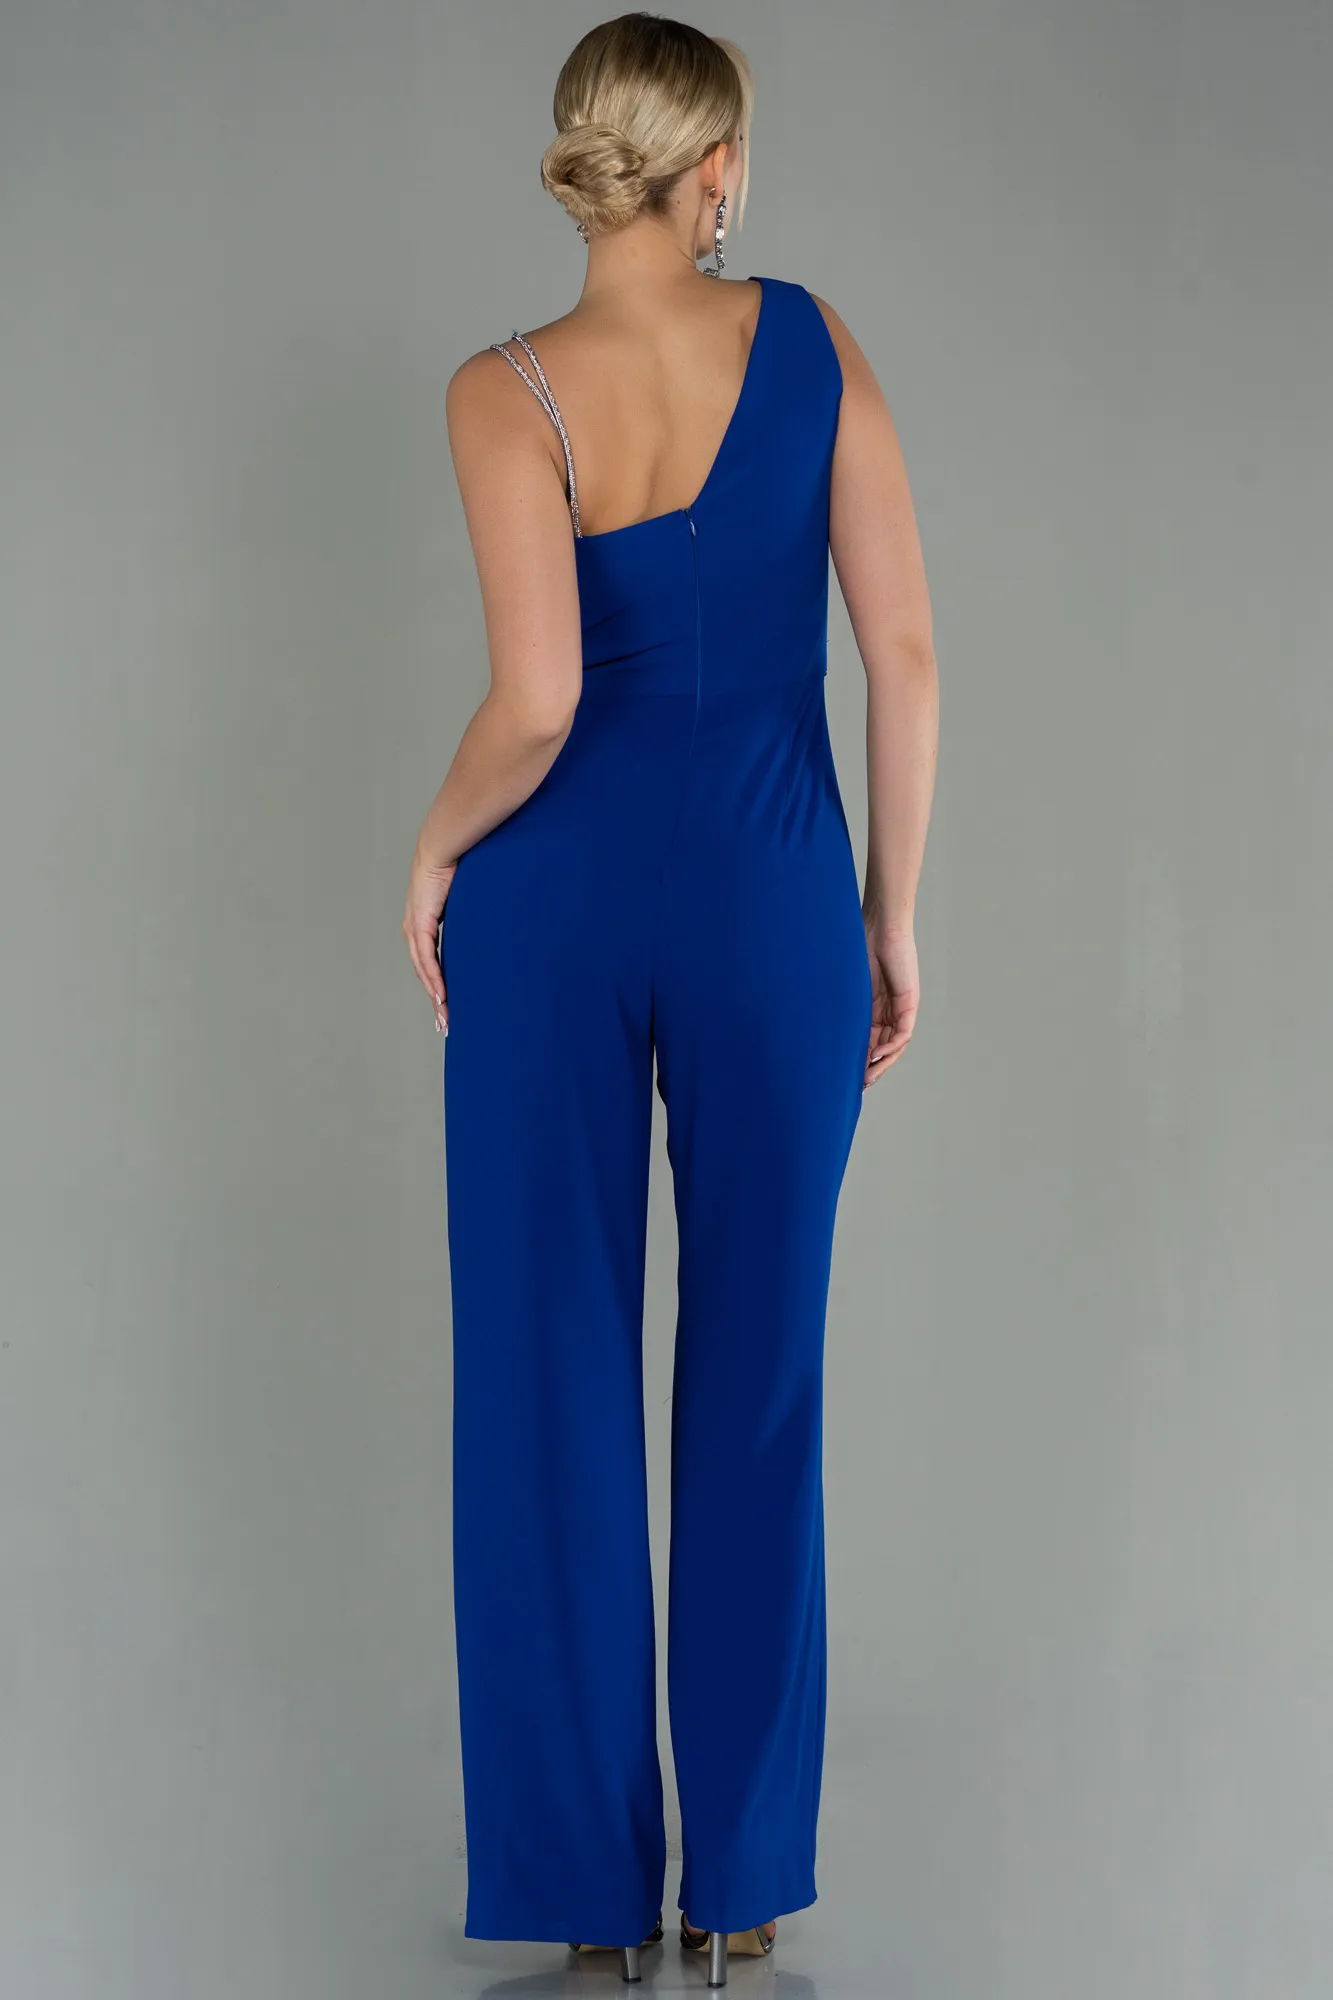 Sax Blue-Invitation Dress ABT102